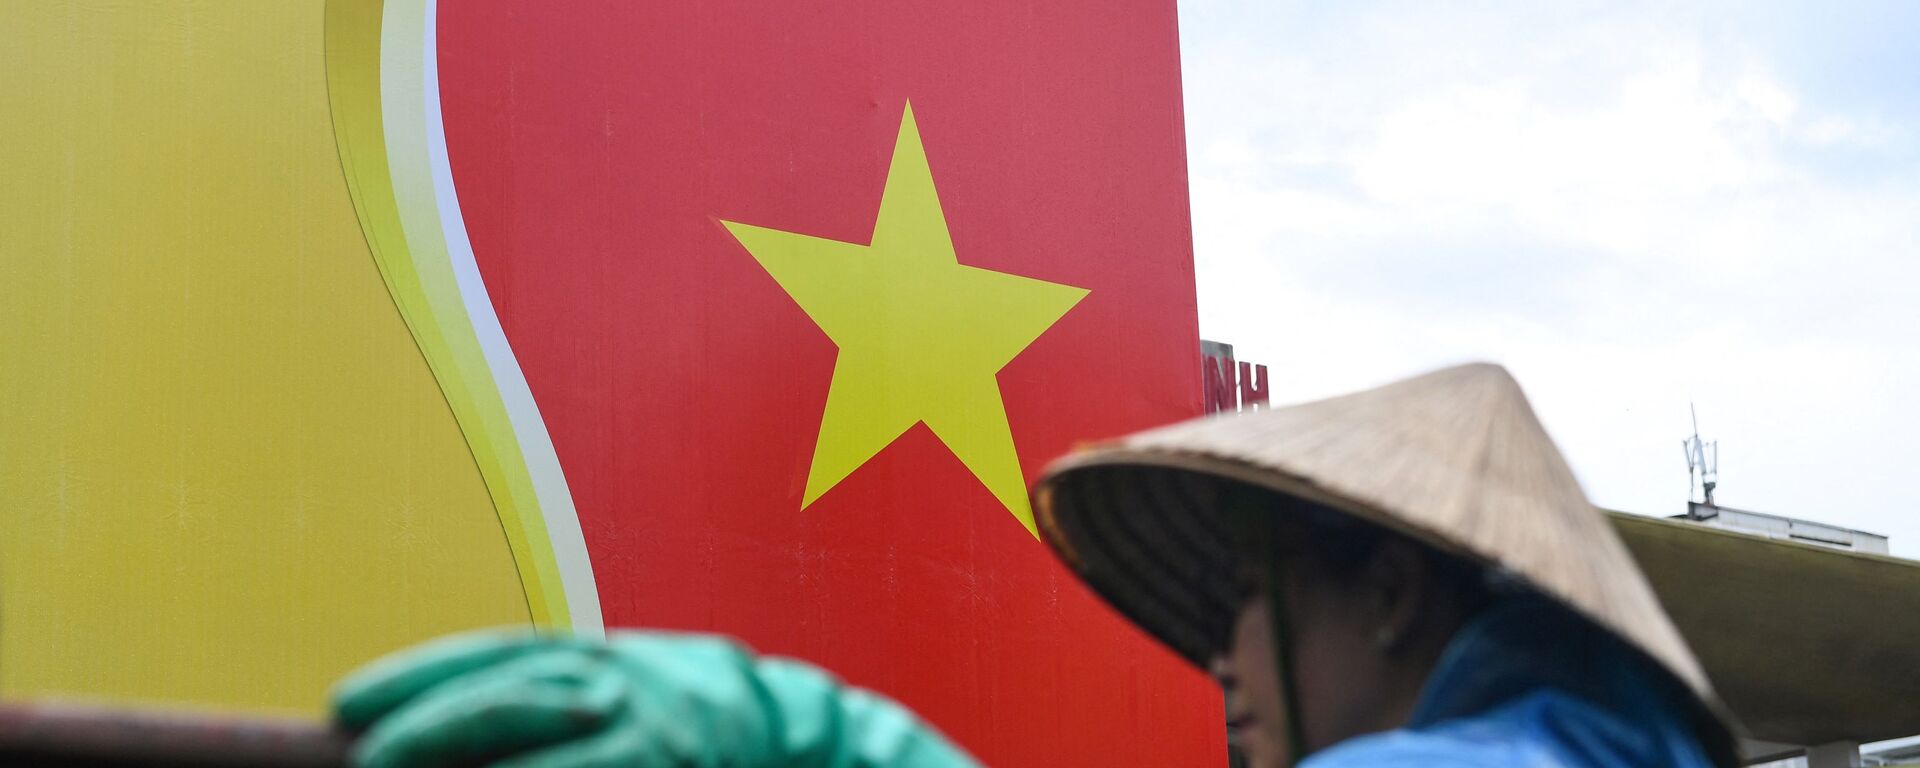 Quốc kỳ Việt Nam. - Sputnik Việt Nam, 1920, 21.12.2021